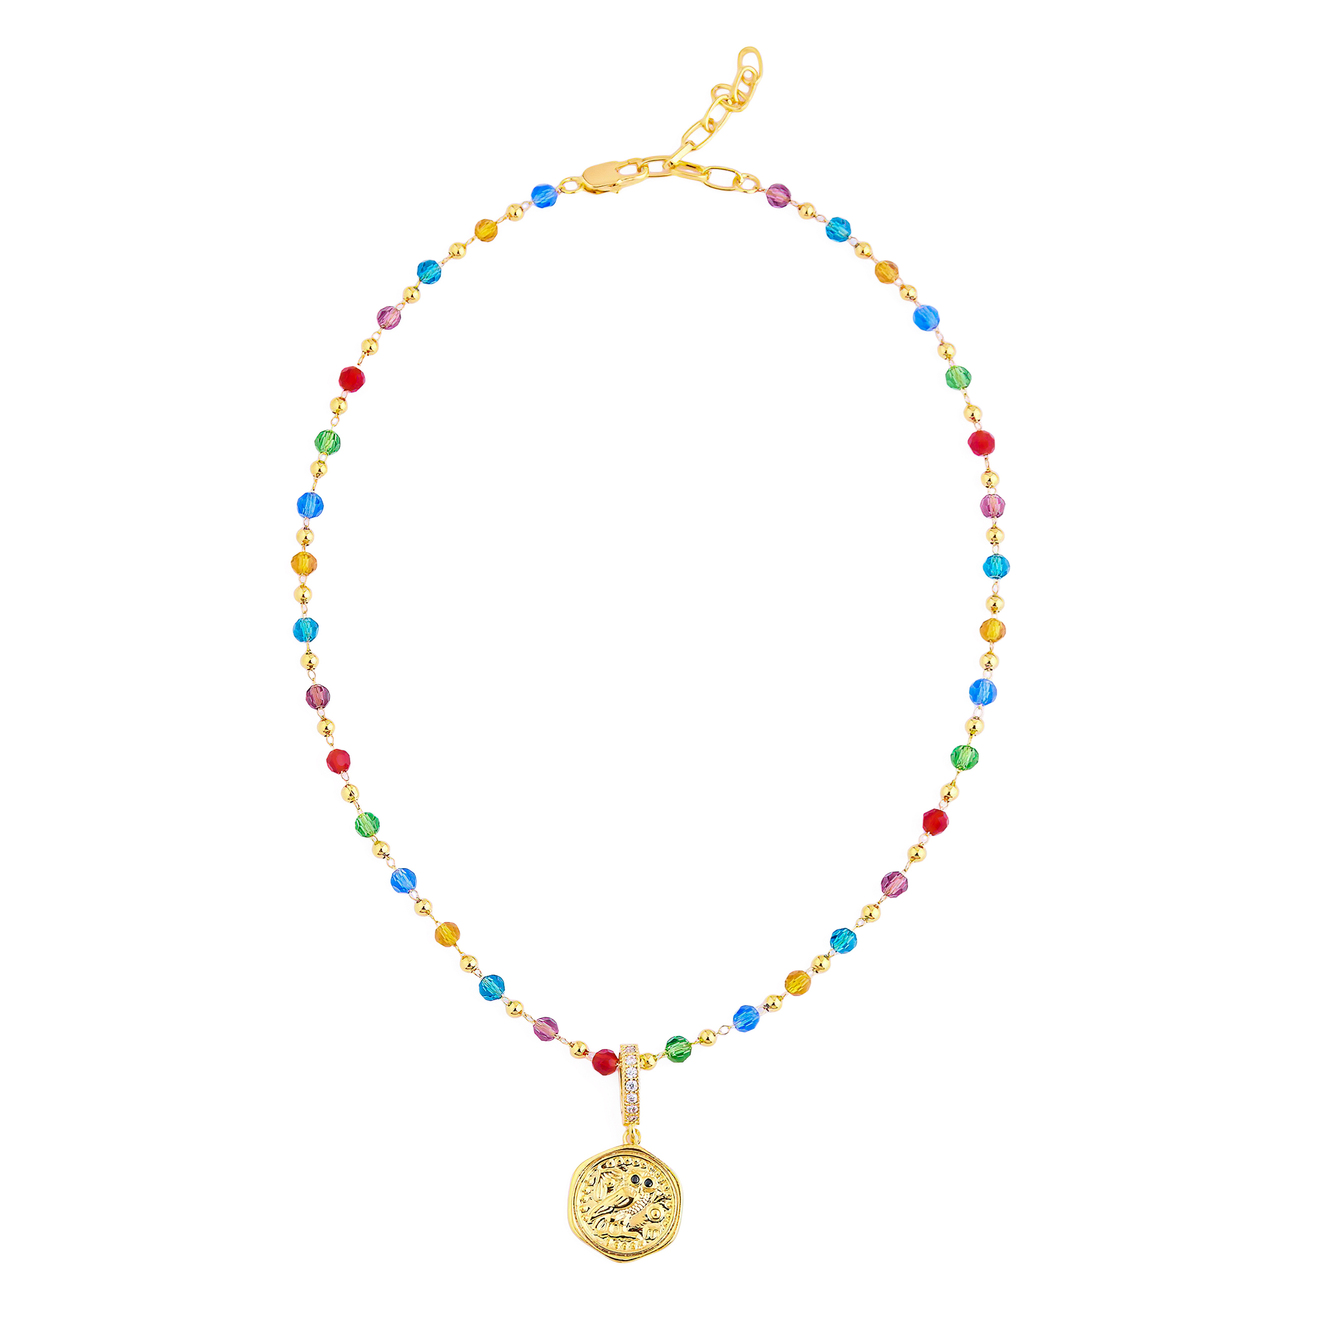 Aqua Разноцветное колье-бусы с рельефным золотистым медальоном aqua золотистое колье из бус и цепи с рельефным медальоном